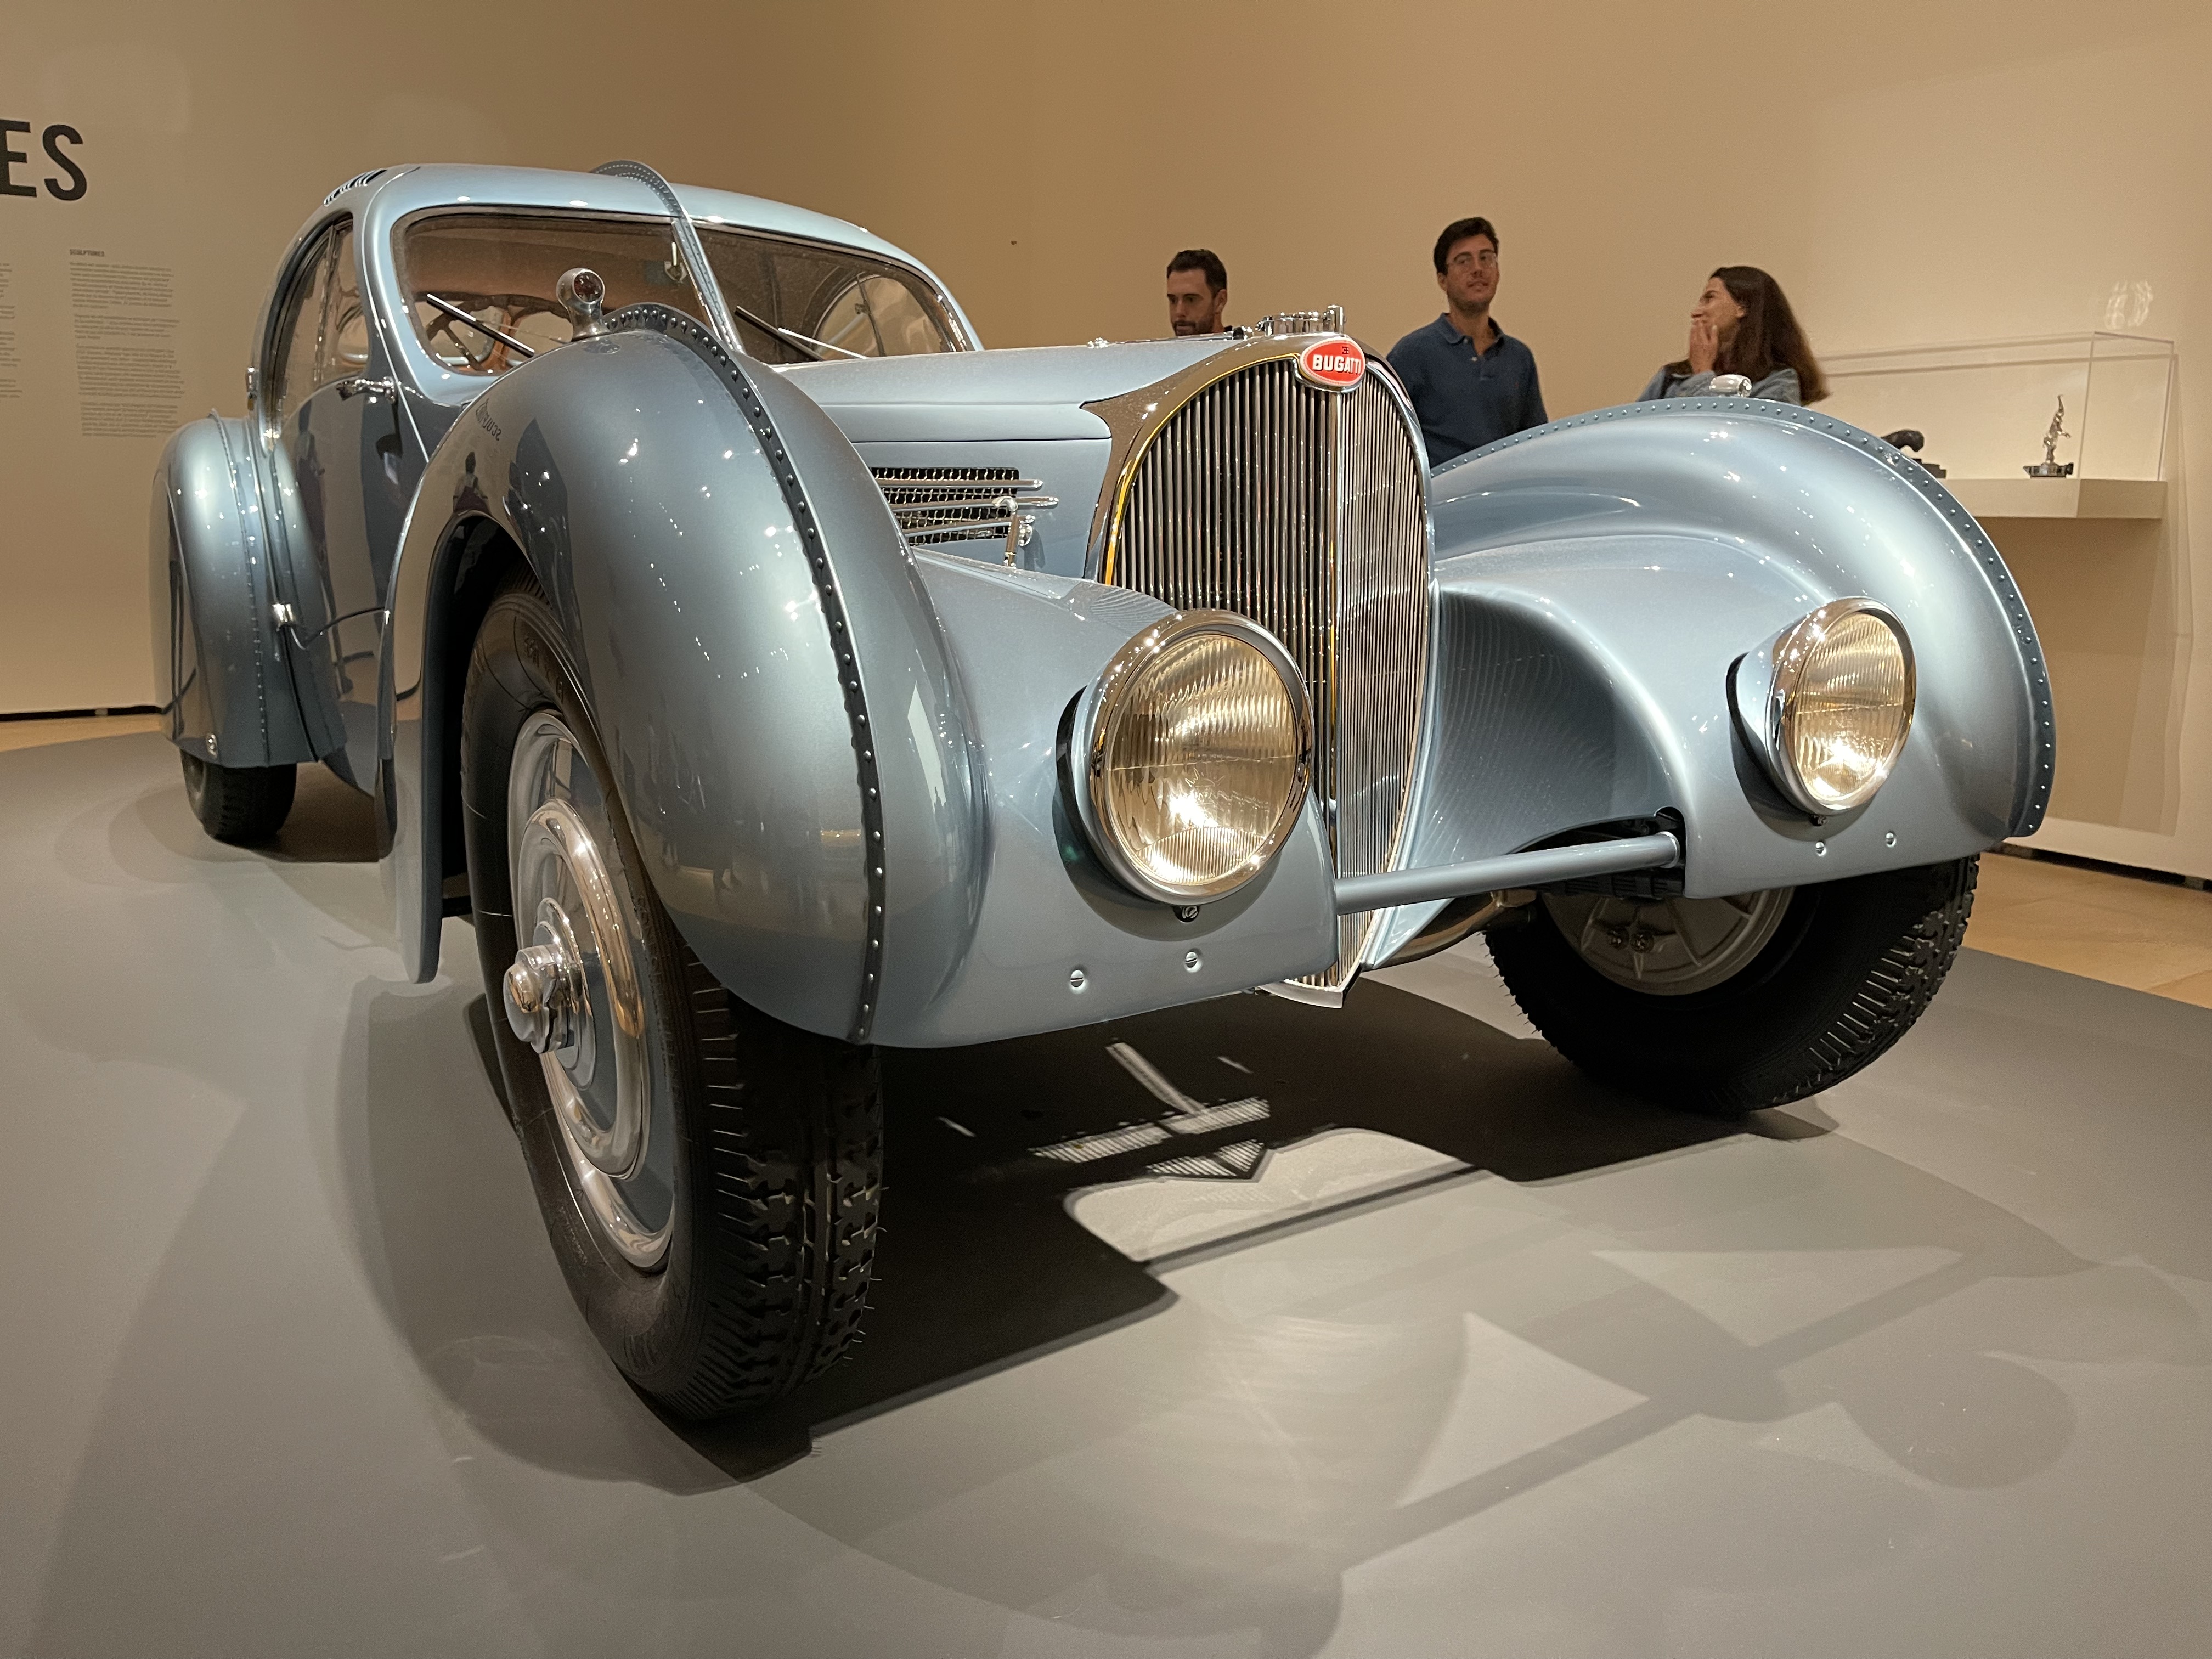 IMG_0844 Motion. Autos, Art, Architecture en el Guggenheim Bilbao - Semanal Clásico - Revista online de coches clásicos, de colección y sport